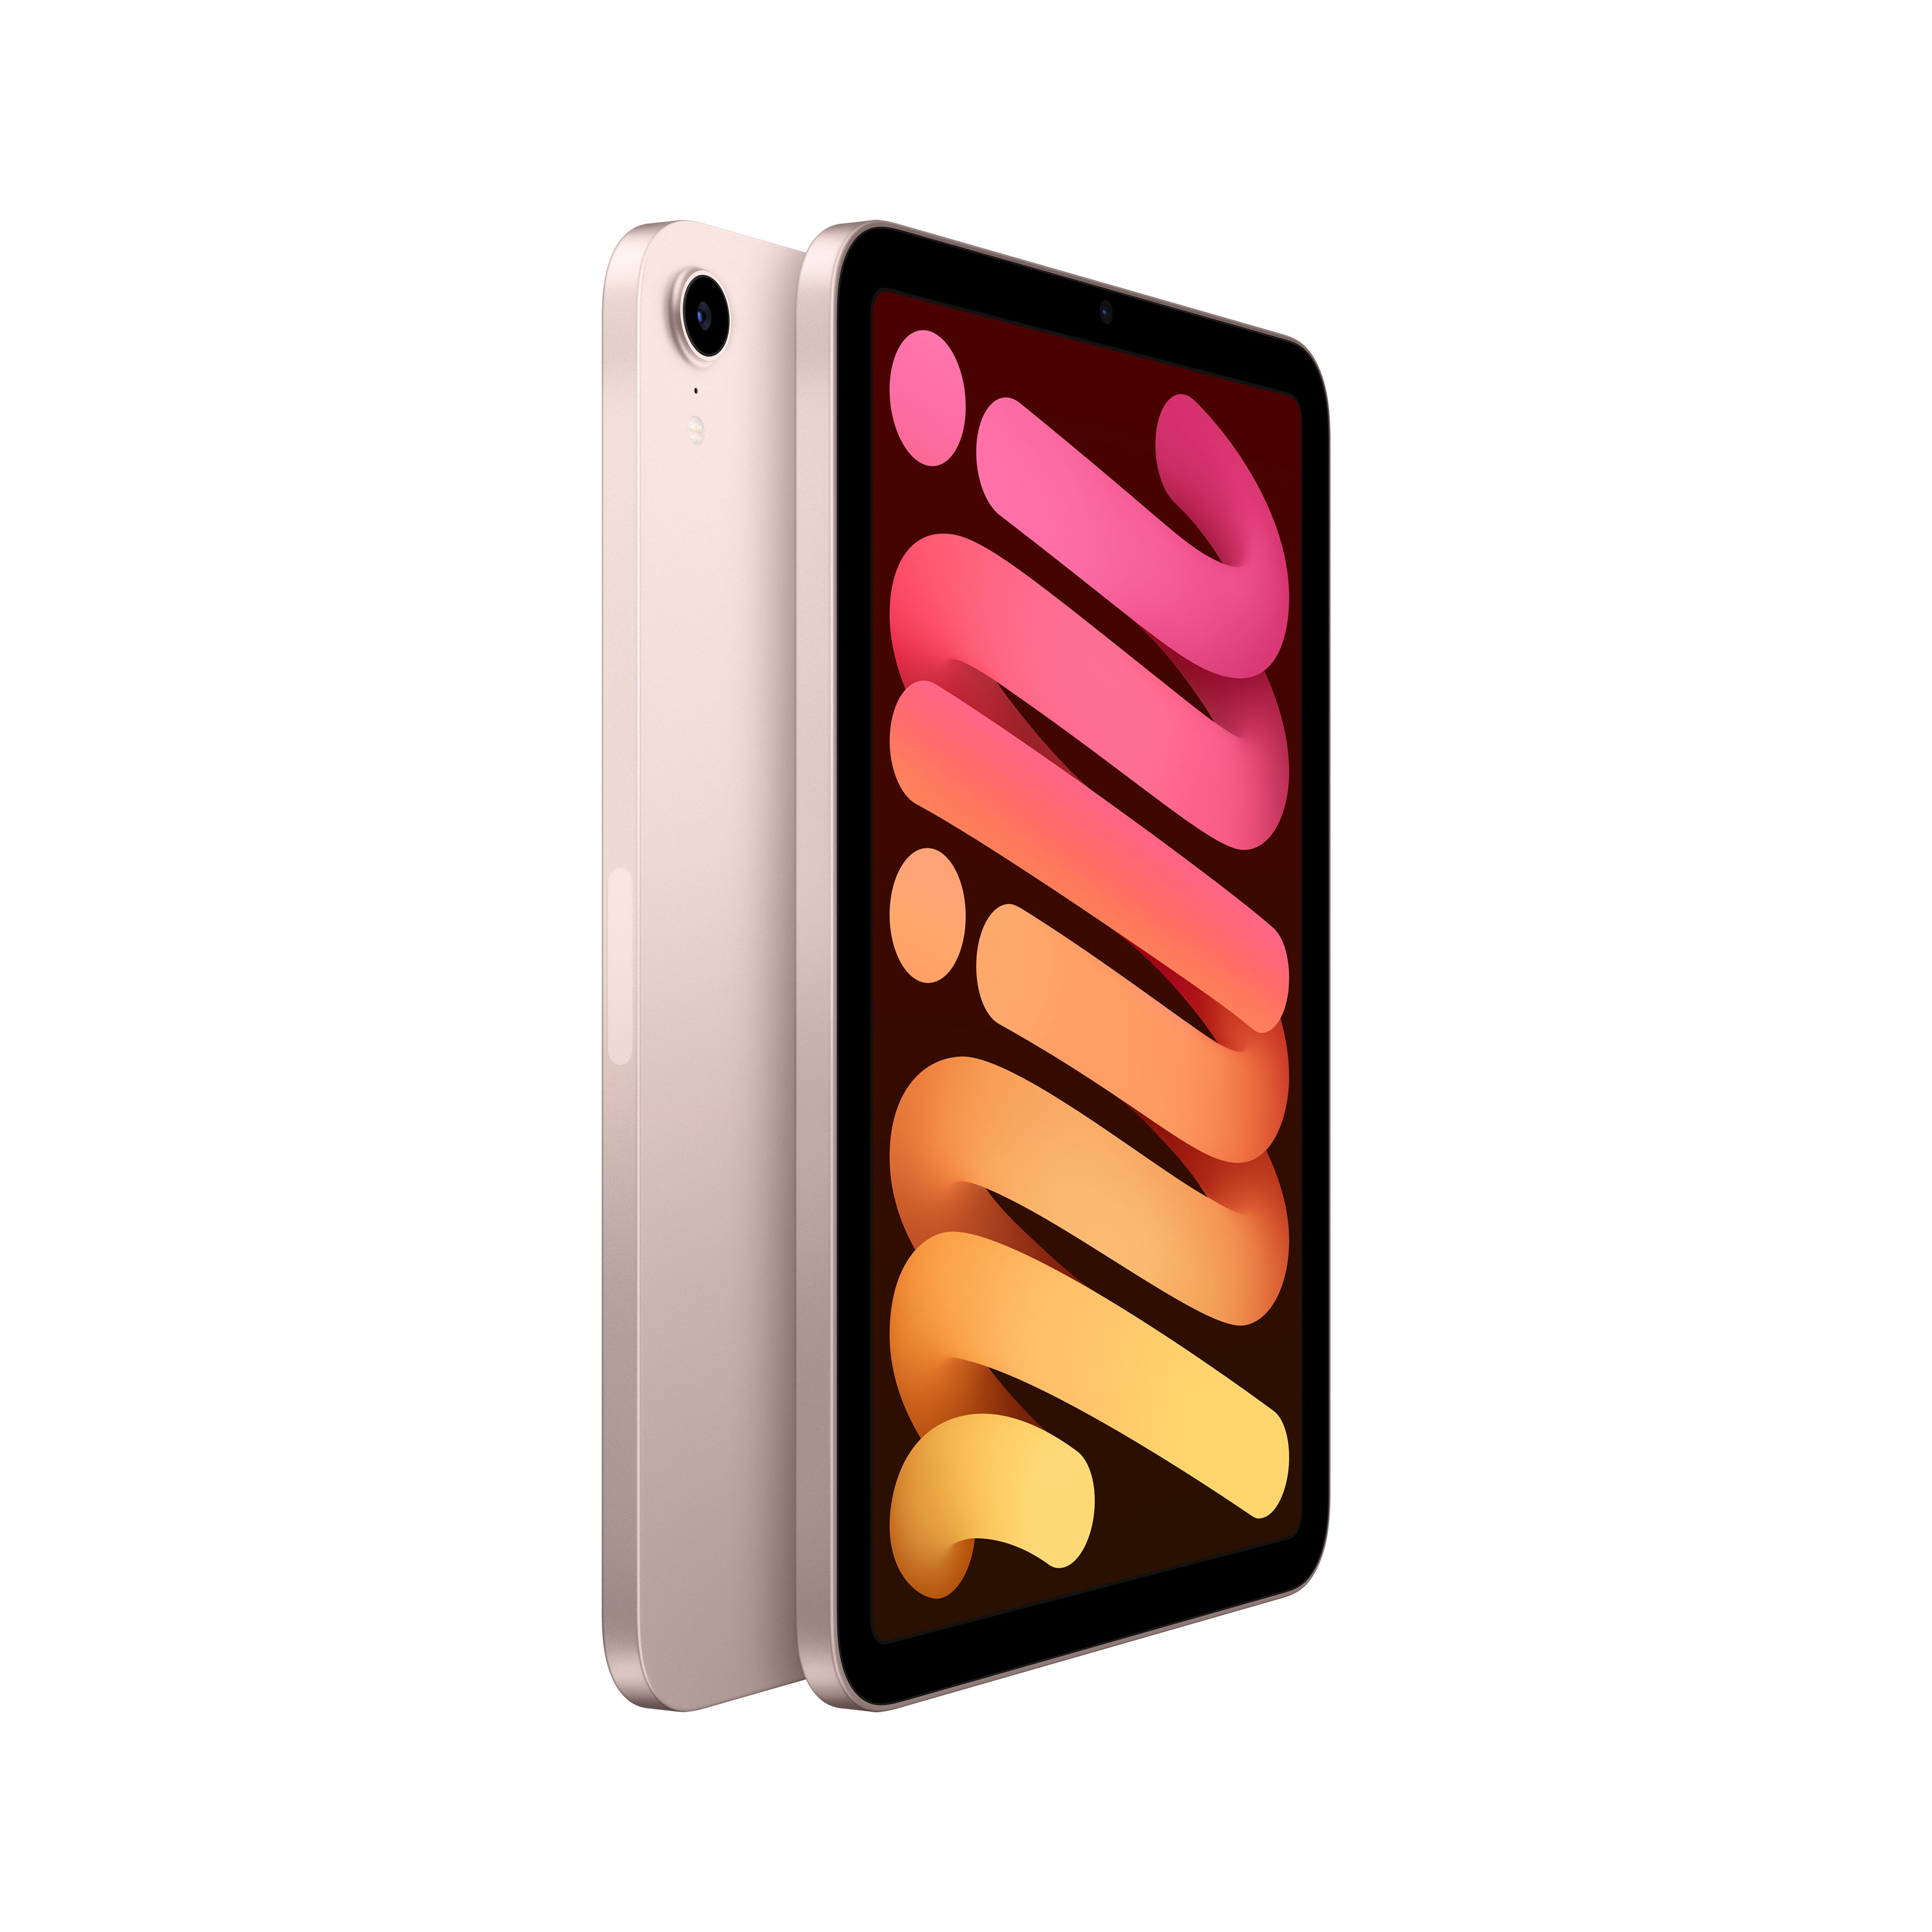 APPLE iPad mini (2021) Wi-Fi - Tablette (8.3 ", 64 GB, Pink)